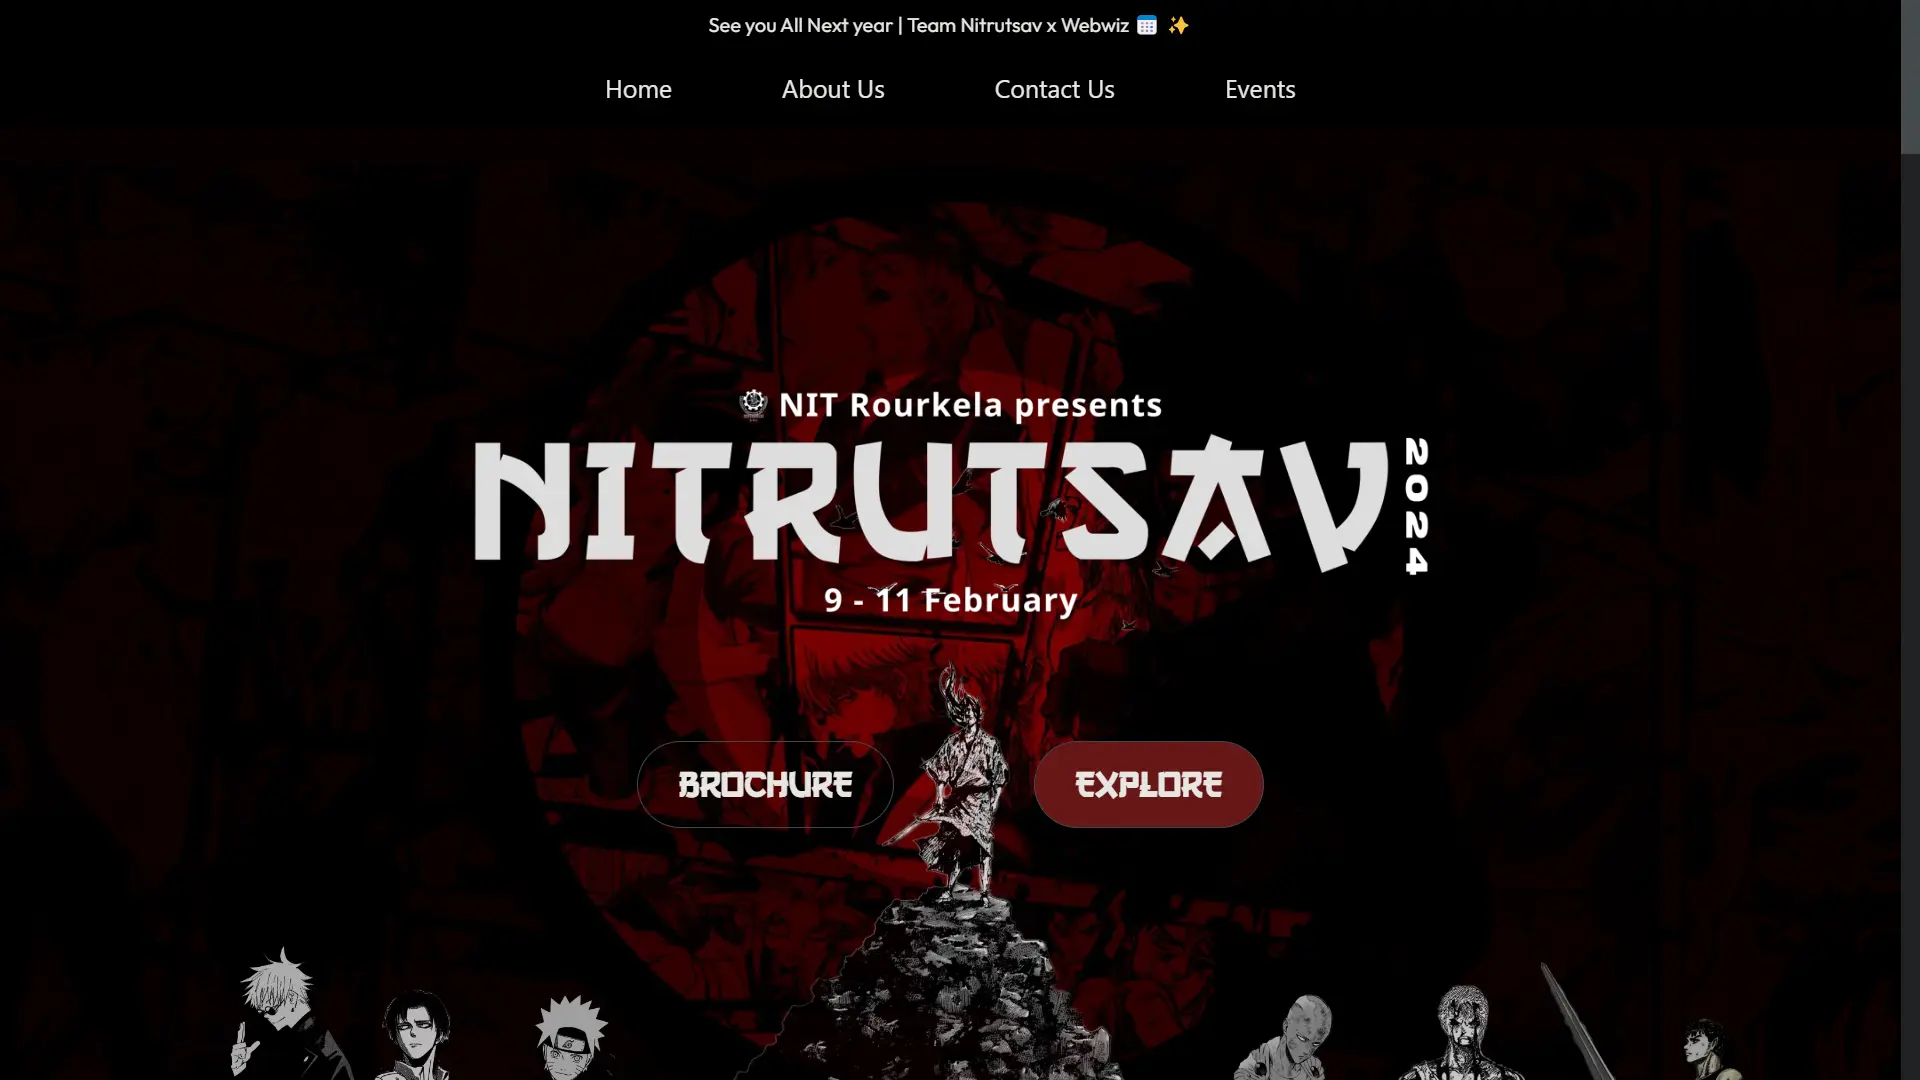 NITRUTSAV - NIT Rourkela